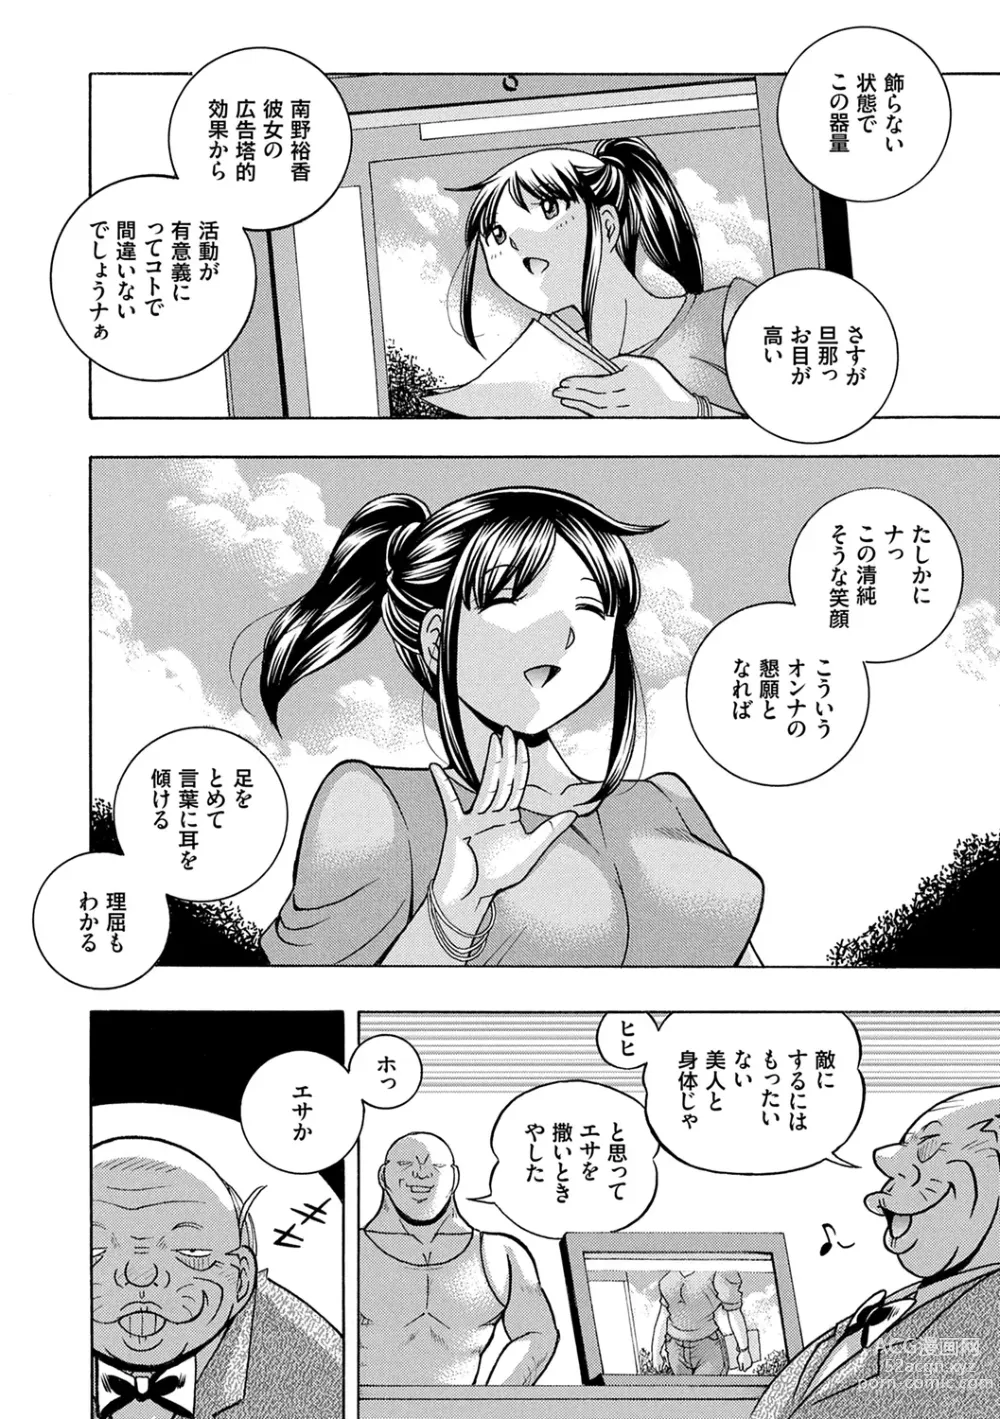 Page 10 of manga Joshidaisei Yuuka